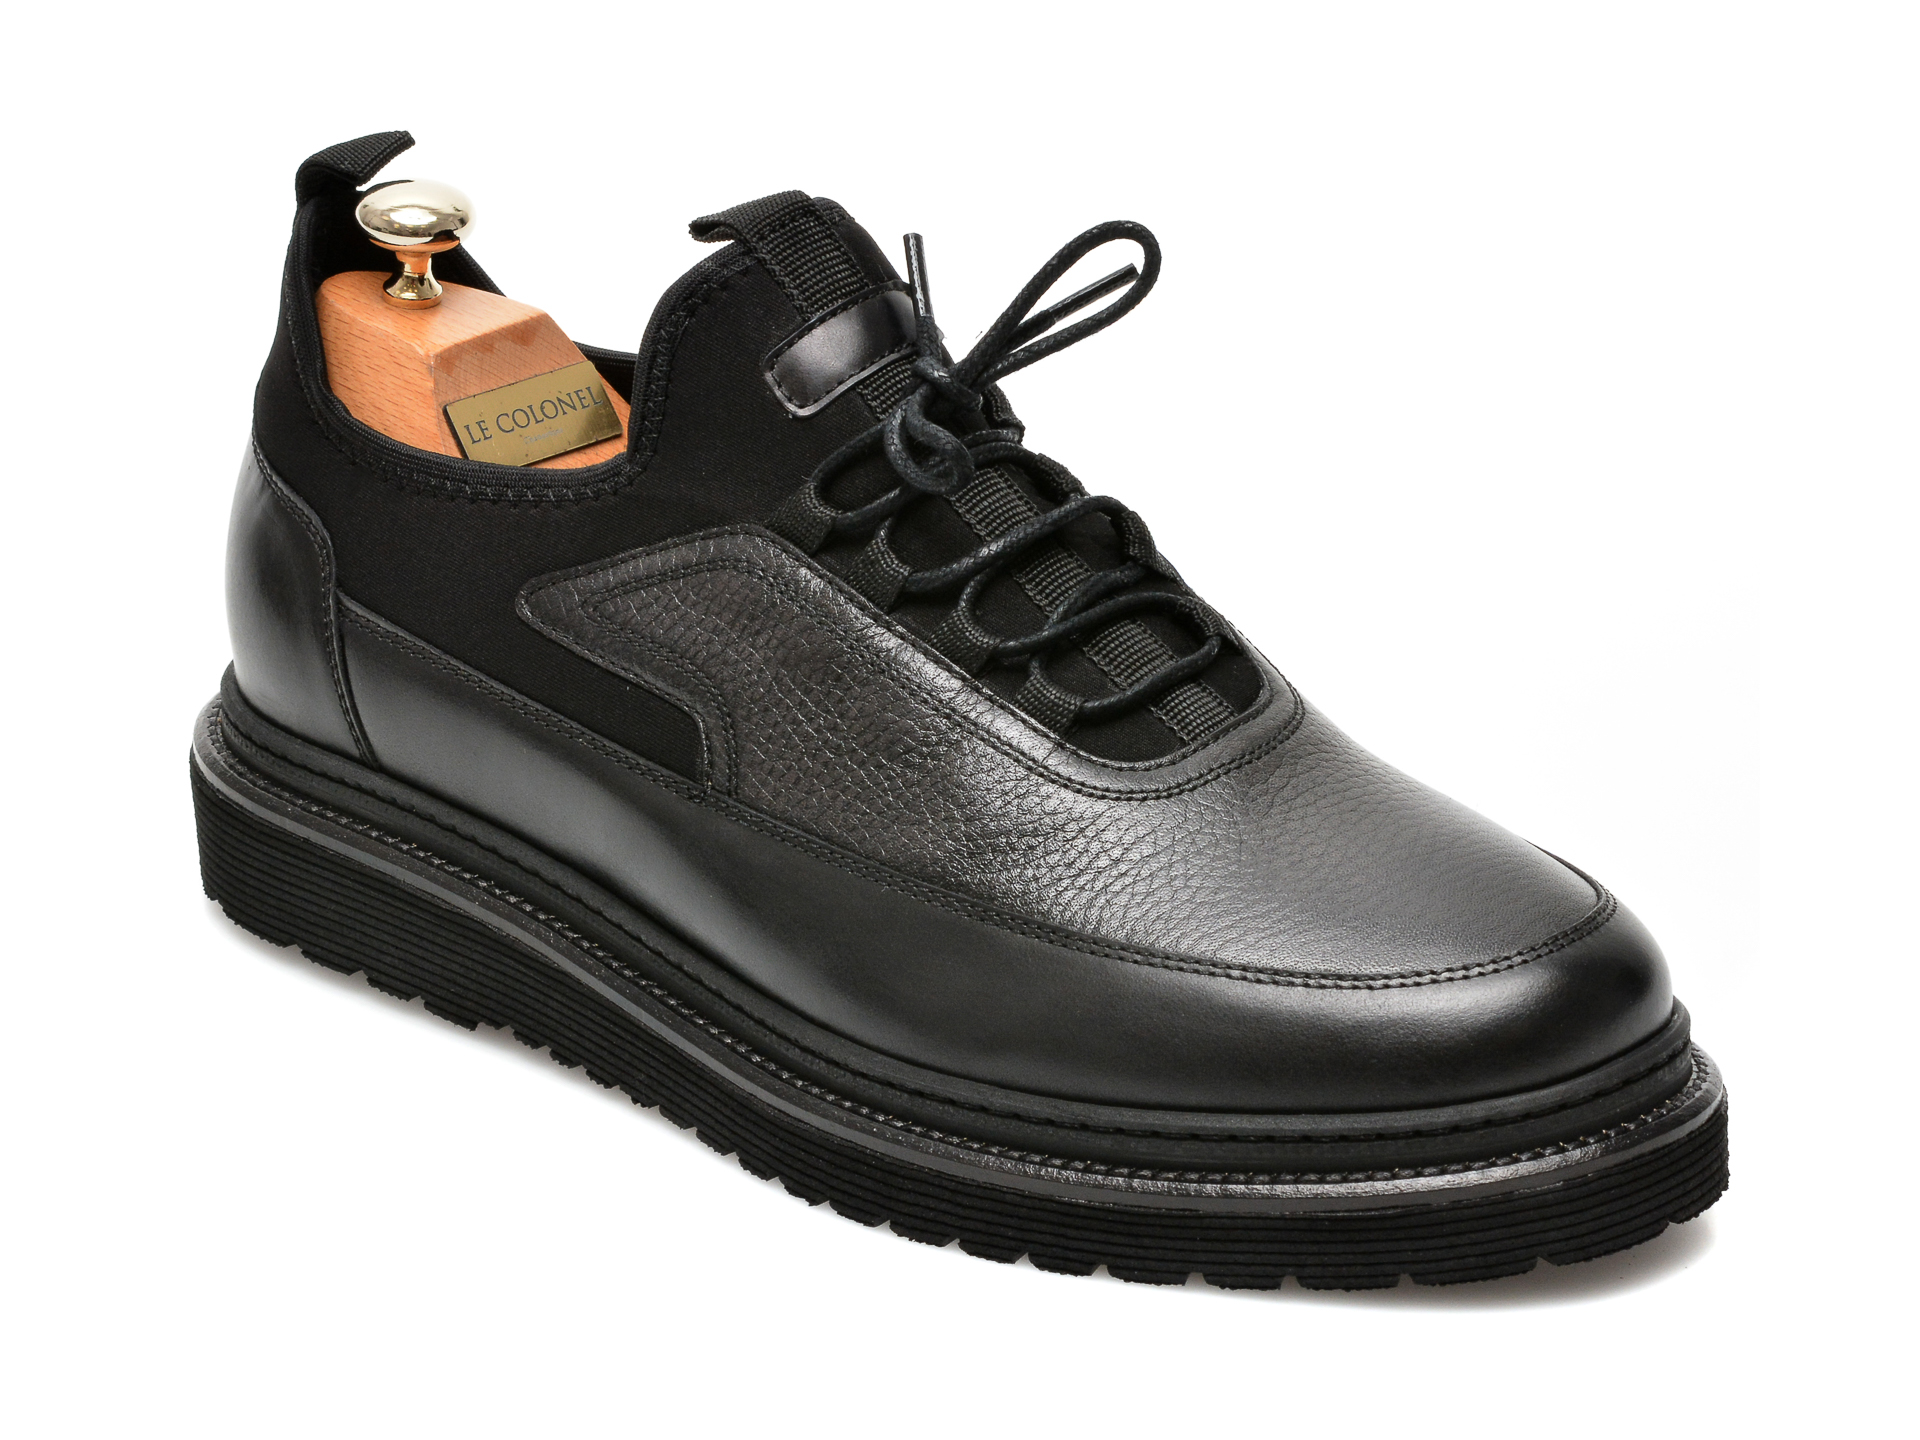 Pantofi LE COLONEL negri, 64816, din material textil si piele naturala Le Colonel imagine noua